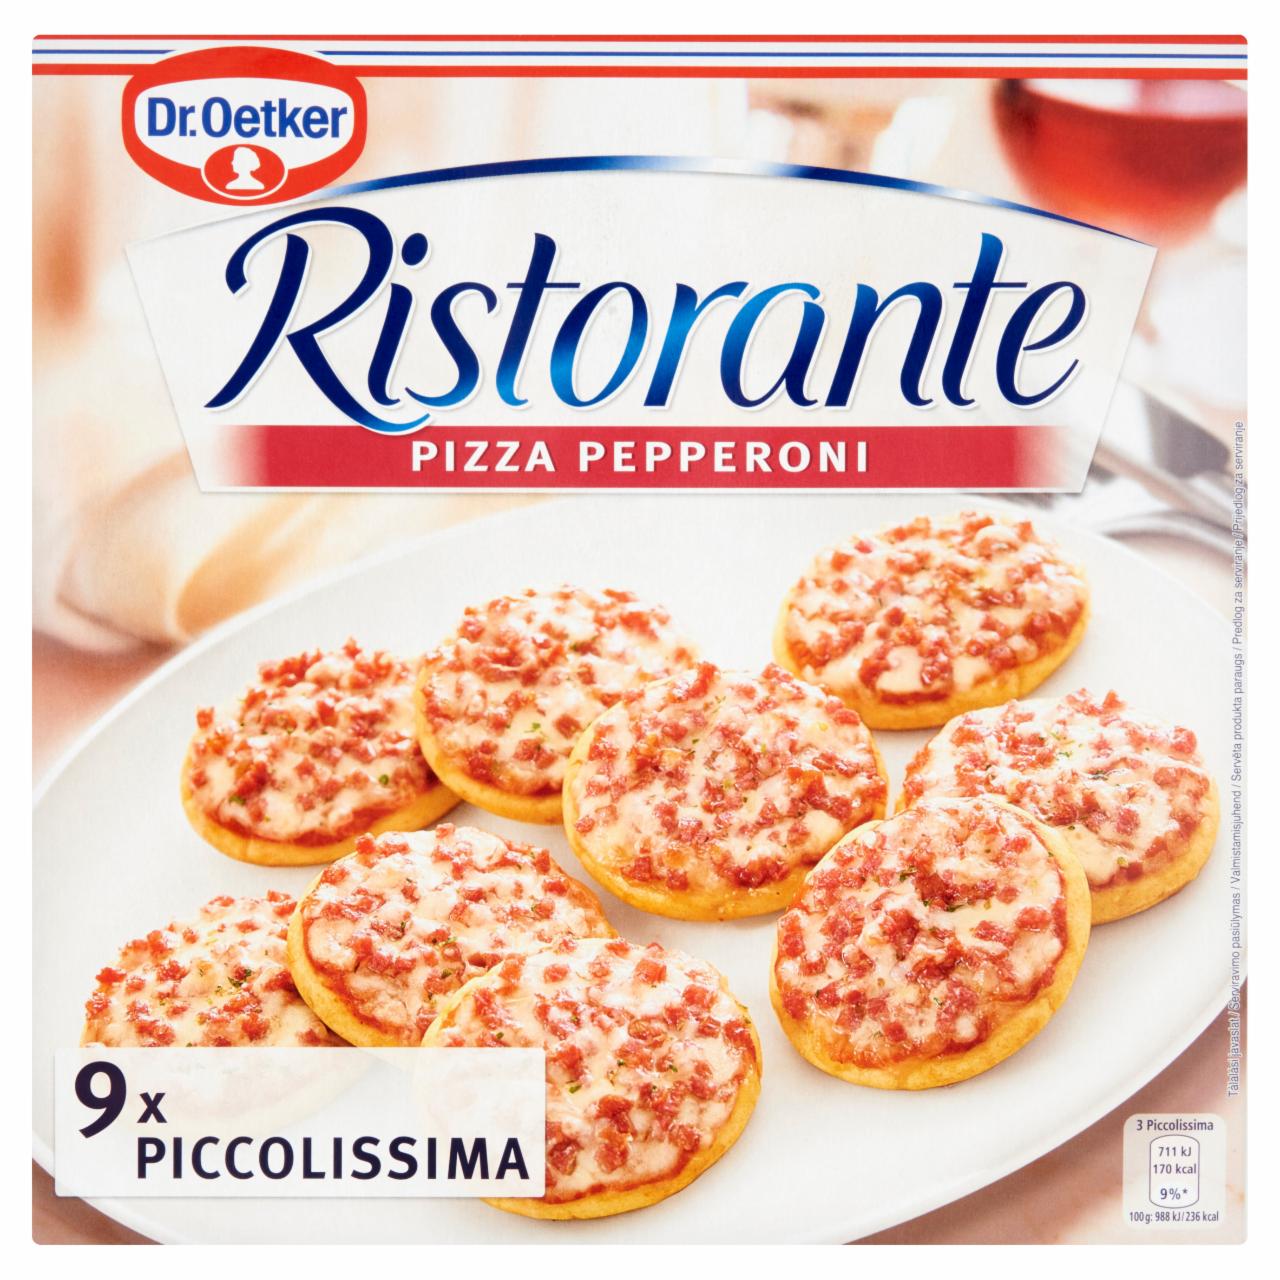 Képek - Dr. Oetker Ristorante Pizza Pepperoni gyorsfagyasztott mini pizza 216 g